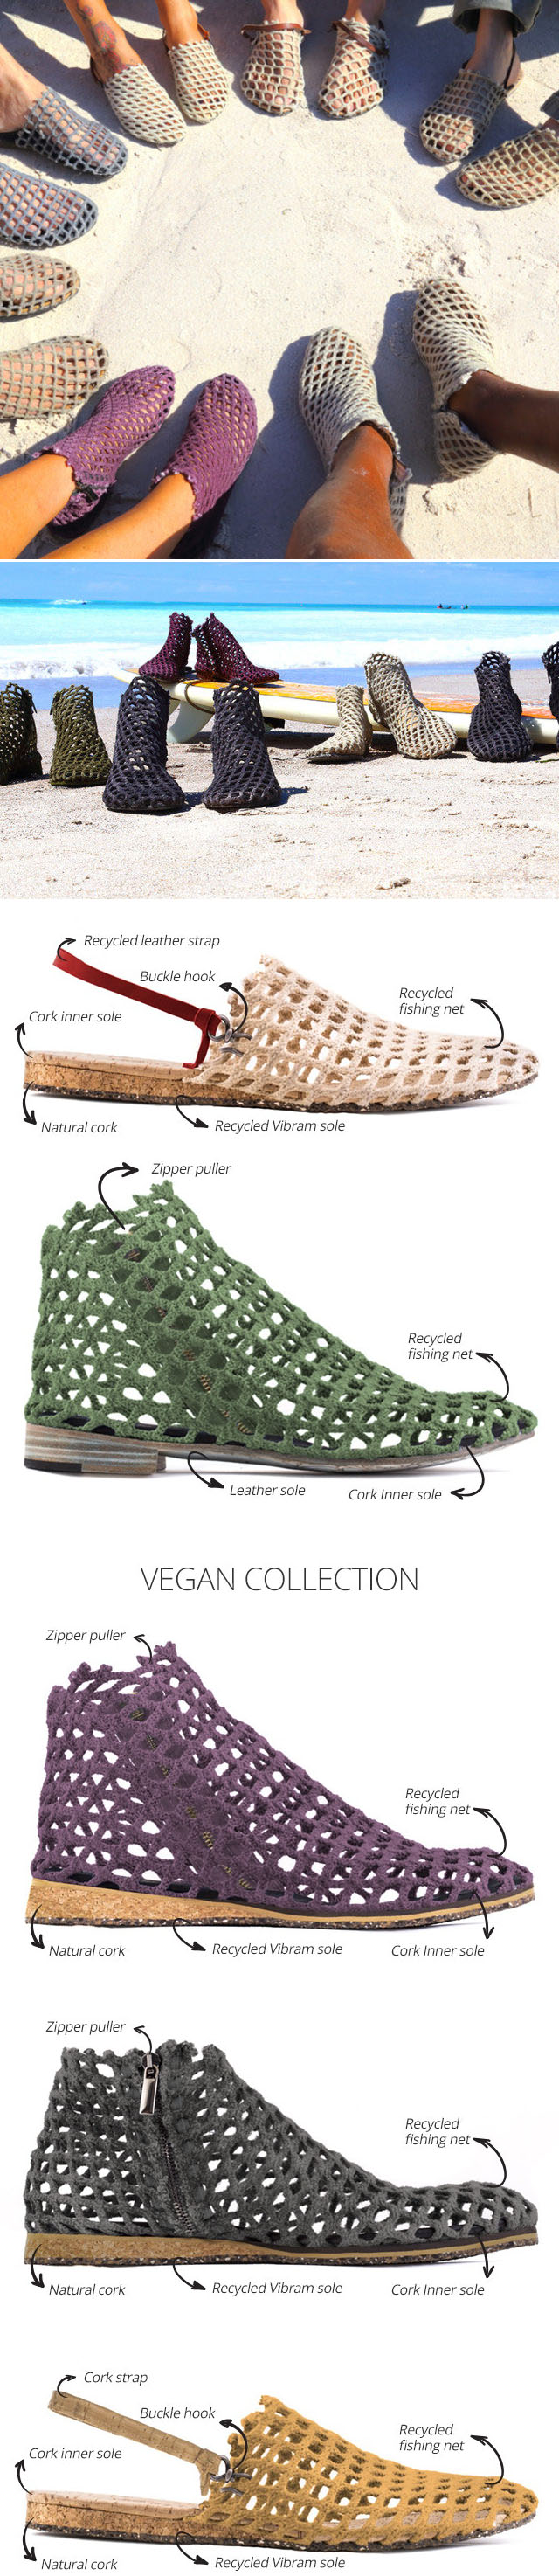 Verdura, os sapatos ecológicos feitos de rede de pesca recuperados stylo urbano-1